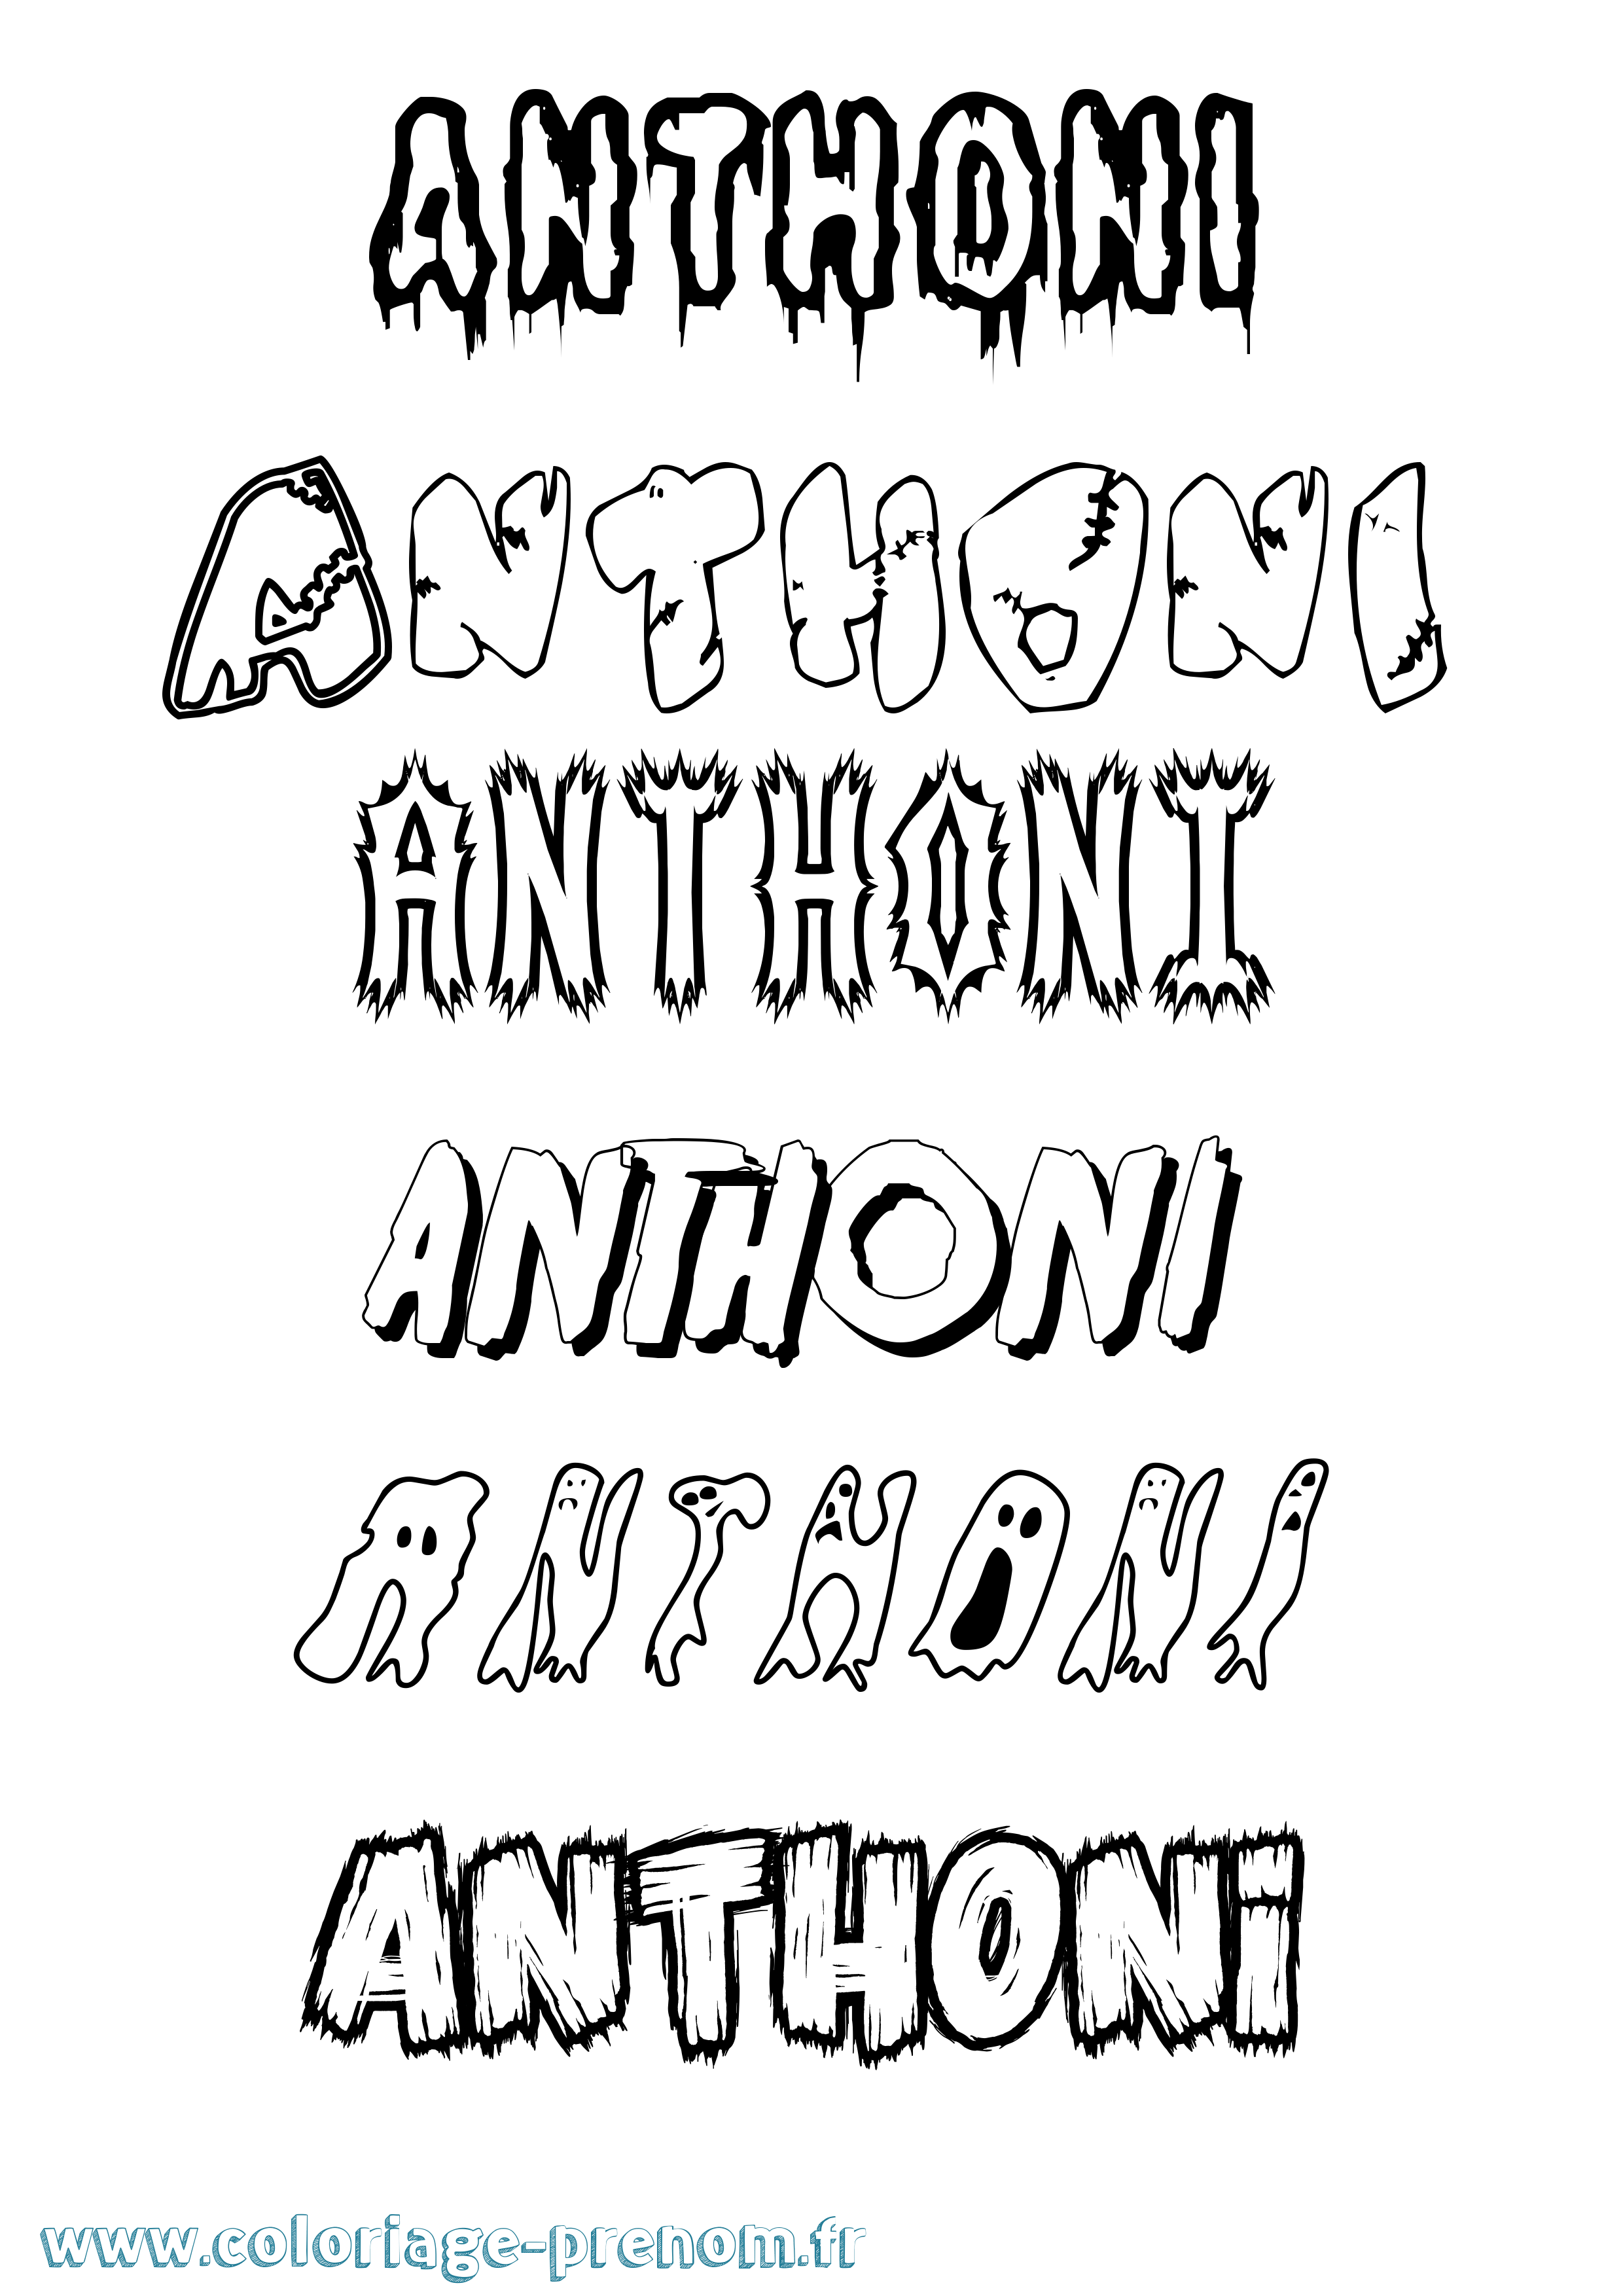 Coloriage prénom Anthoni Frisson